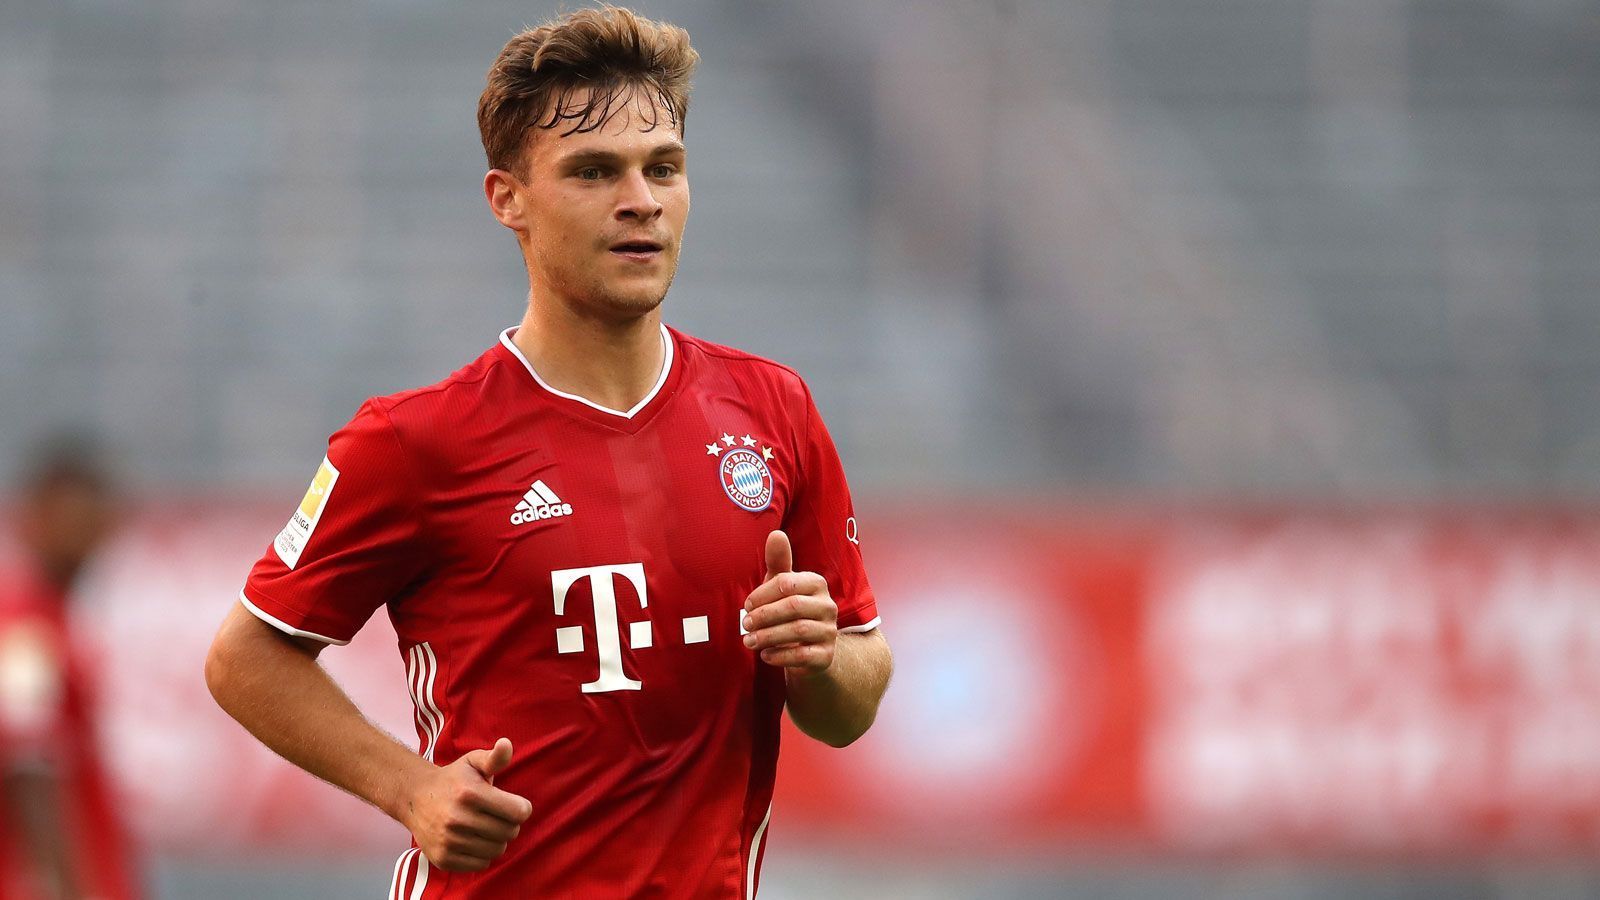 
                <strong>Platz 5: Joshua Kimmich</strong><br>
                 - Verein: FC Bayern München - Marktwertsprung: + 10 Millionen Euro - Marktwert: 85 Millionen Euro
              